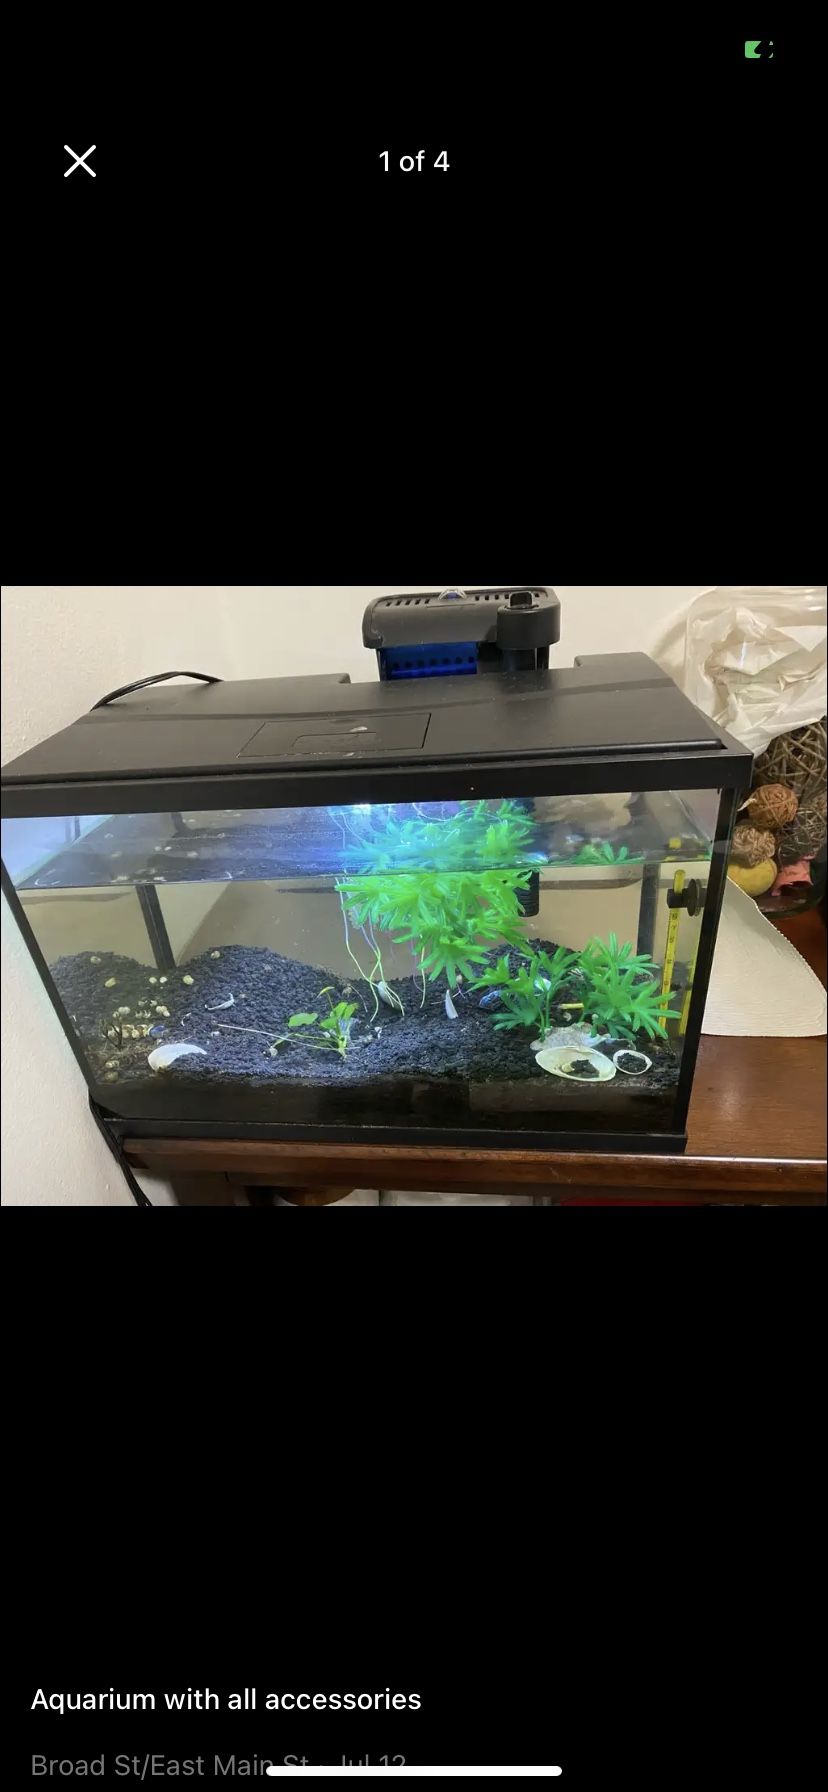 Fish Aquarium With Accessories 